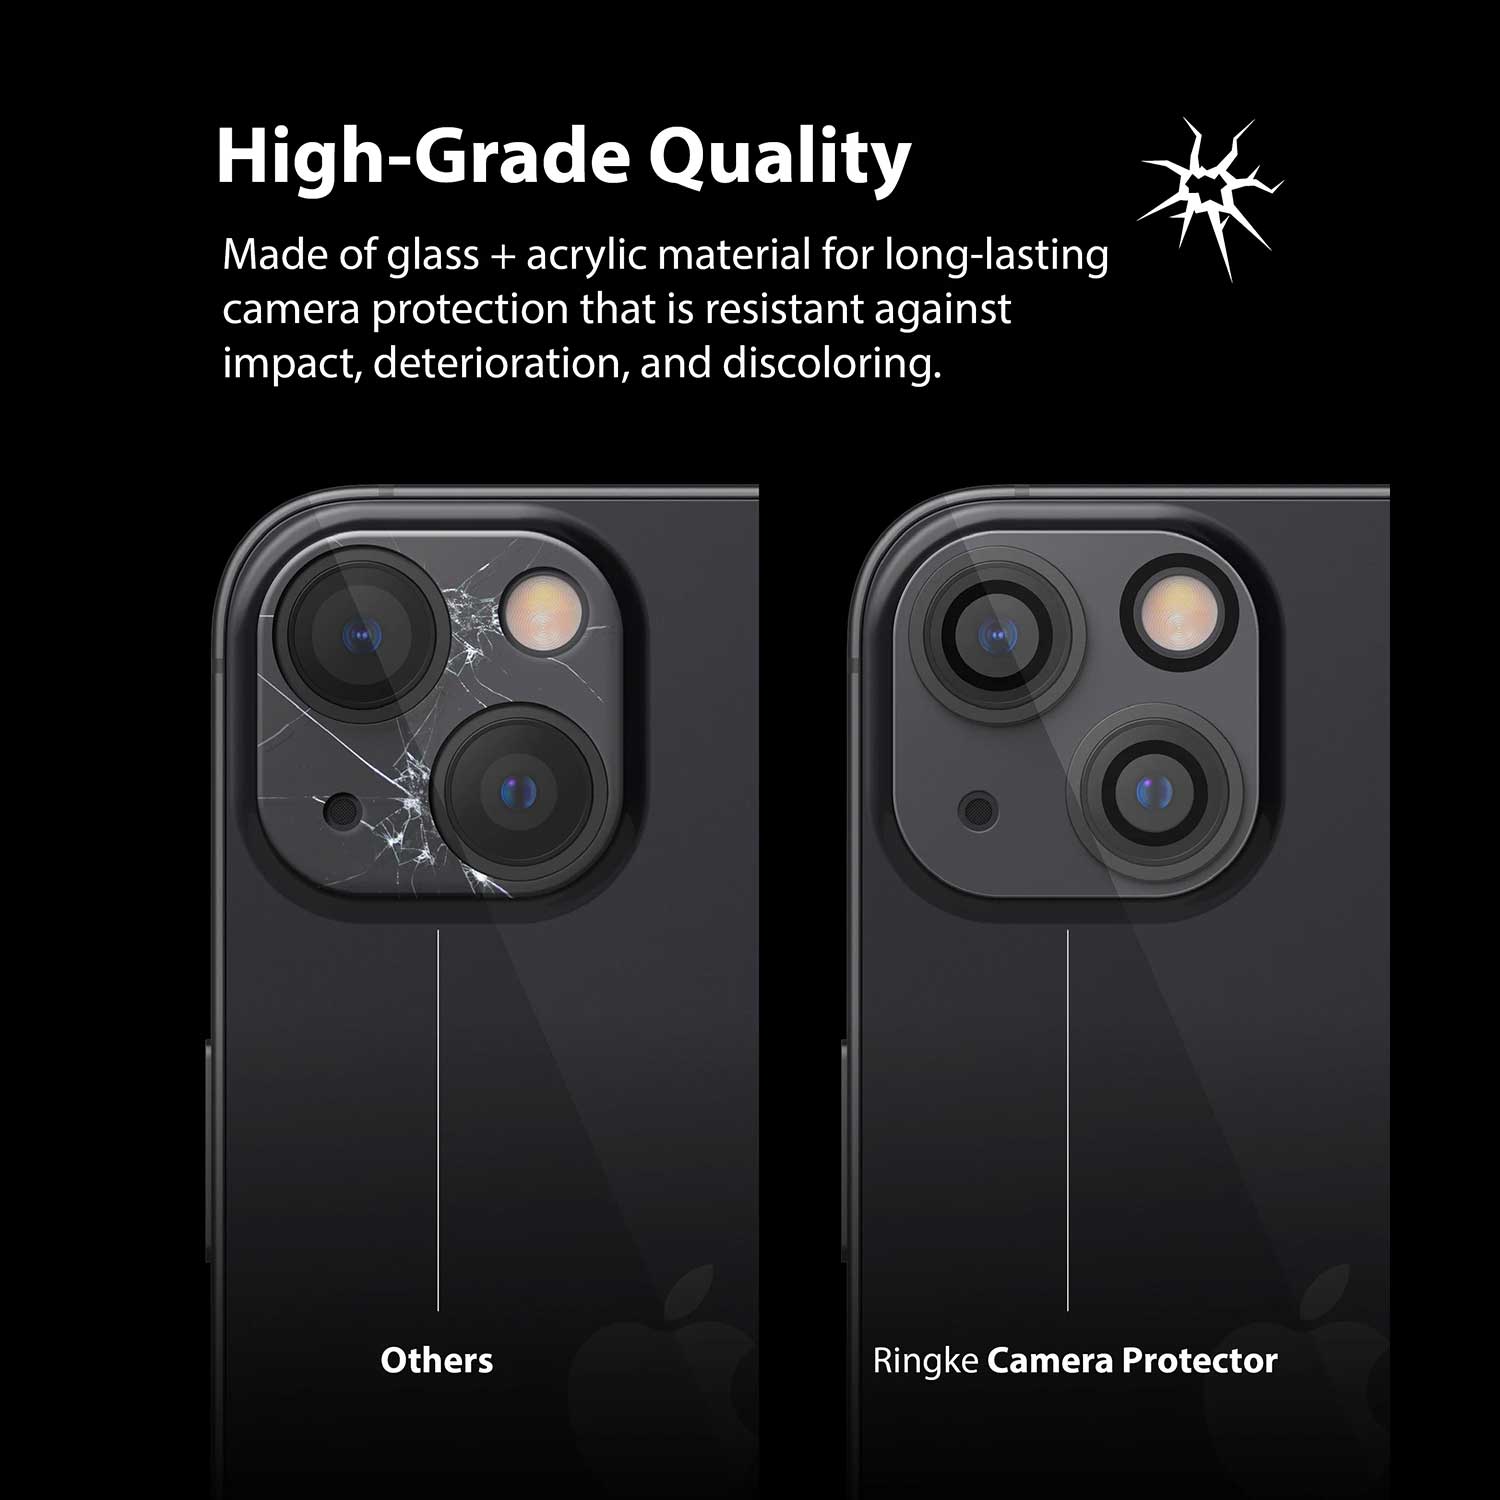 Ringke iPhone 13 Mini Camera Lens Protector 2pack